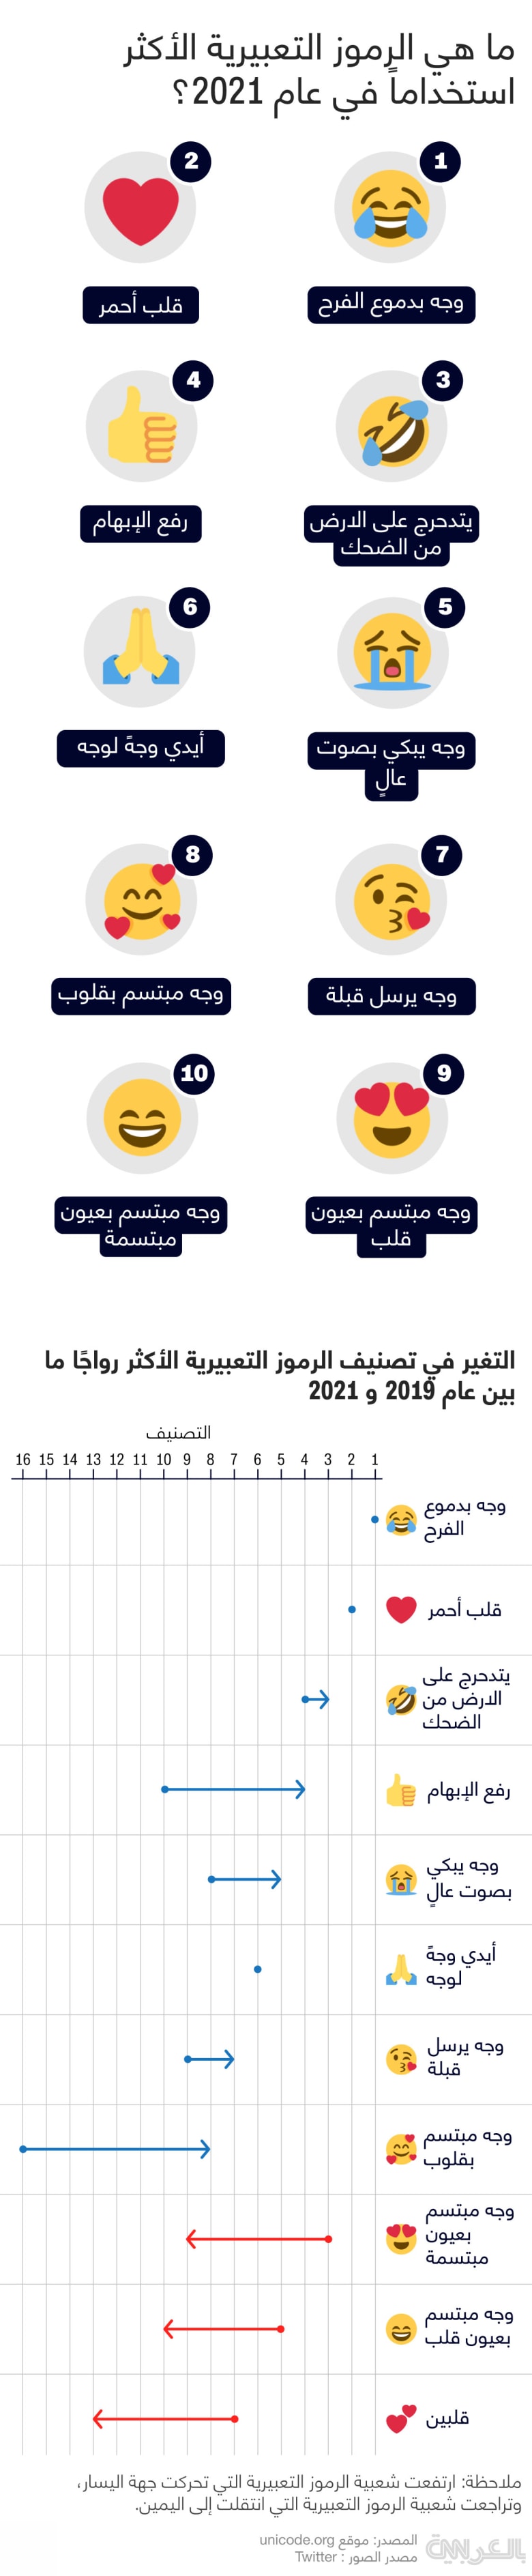 top-10-most-used-emojis-2021